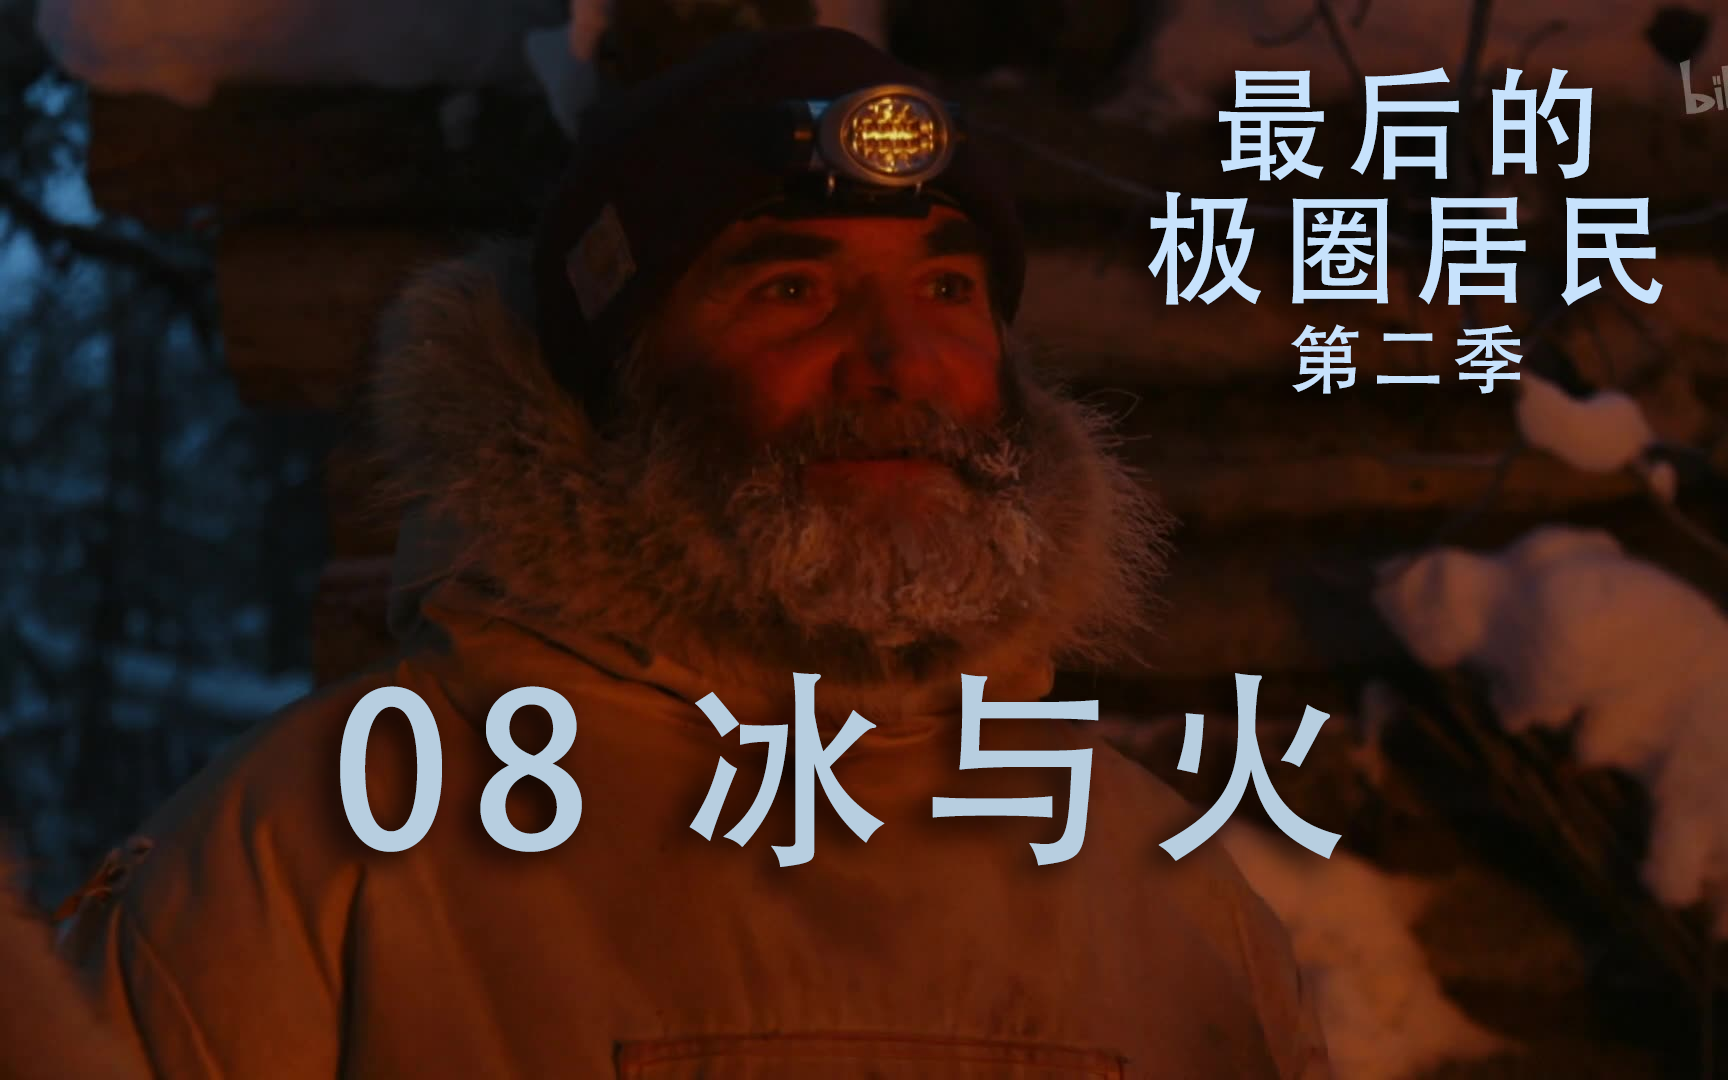 【纪录片】《最后的极圈居民第二季》 08《冰与火》